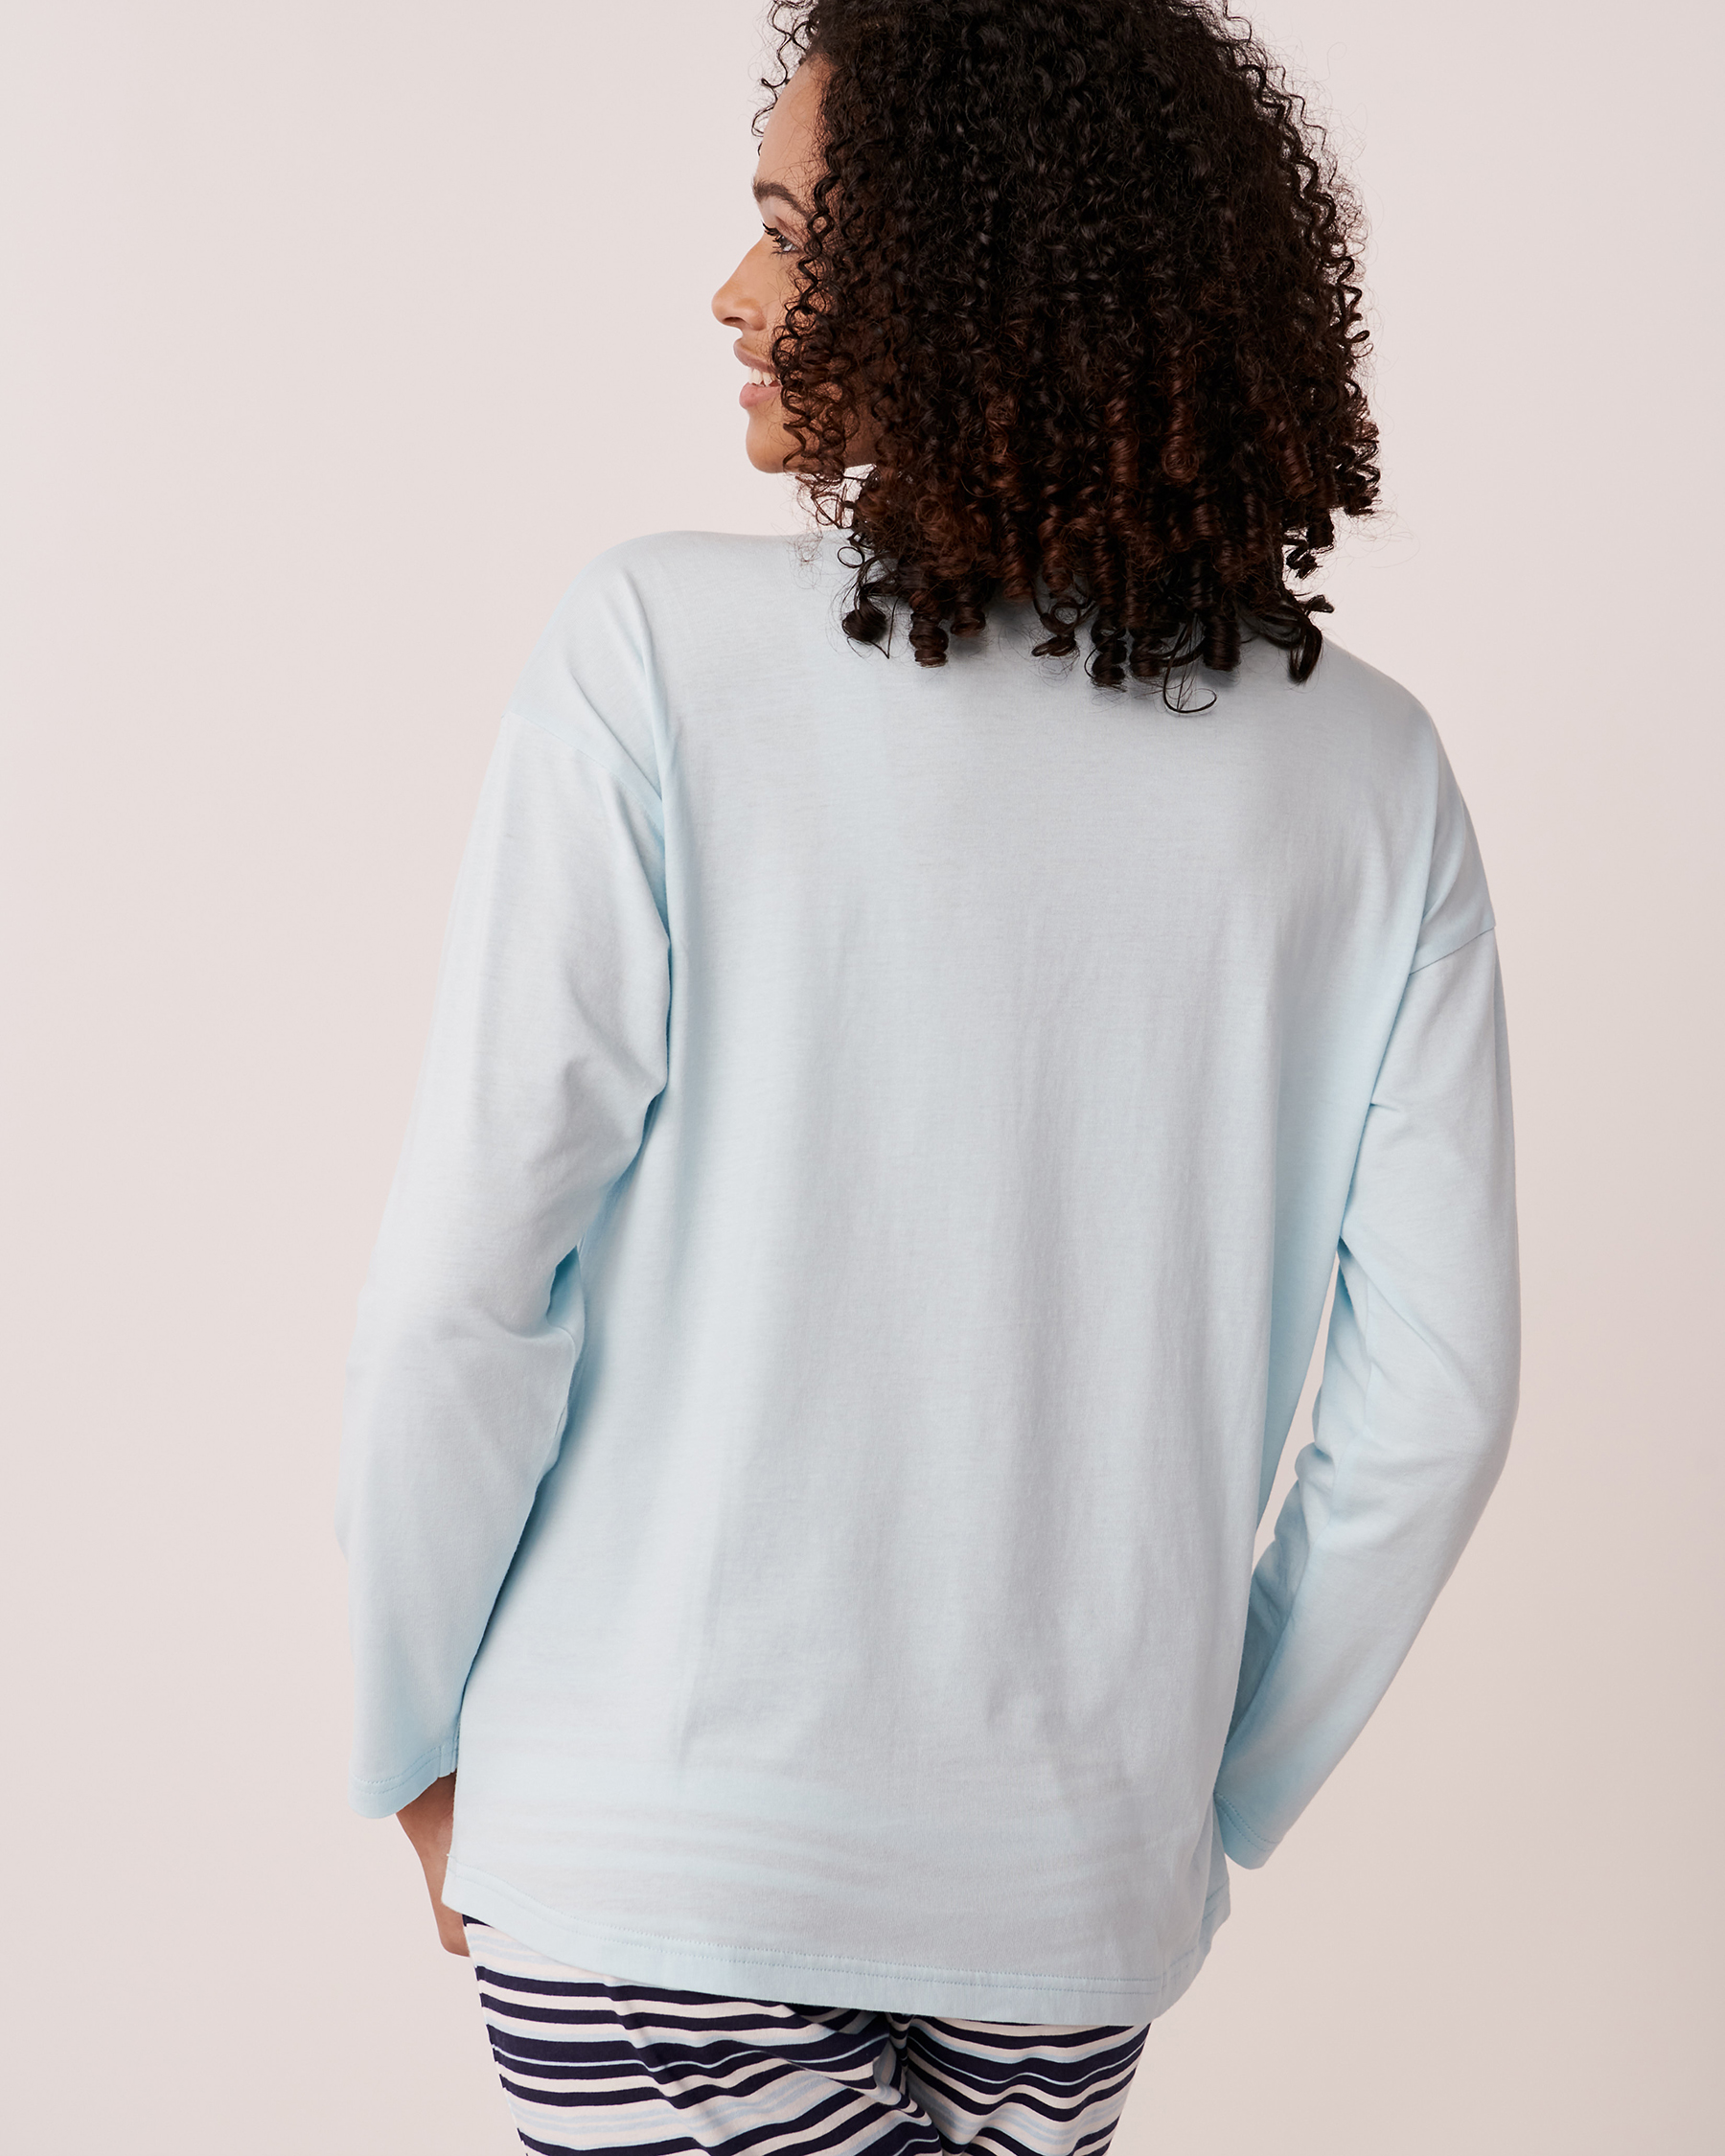 LA VIE EN ROSE Cotton Long Sleeve Shirt Light blue 40100398 - View3